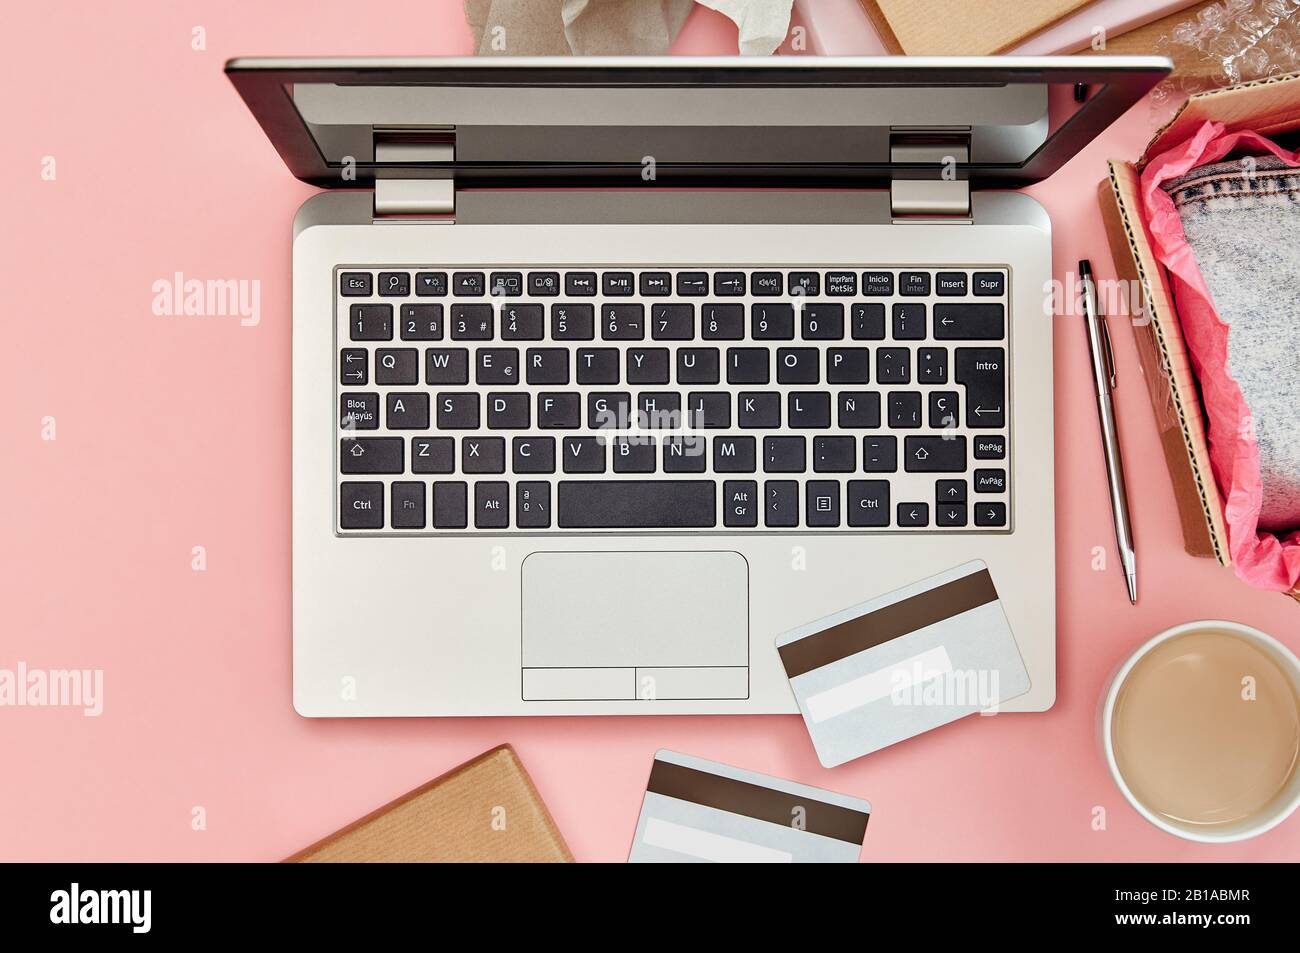 Concept de shopping en ligne sur table de bureau rose avec ordinateur portable, cartes de crédit, colis et vêtements. Vue de dessus. Banque D'Images